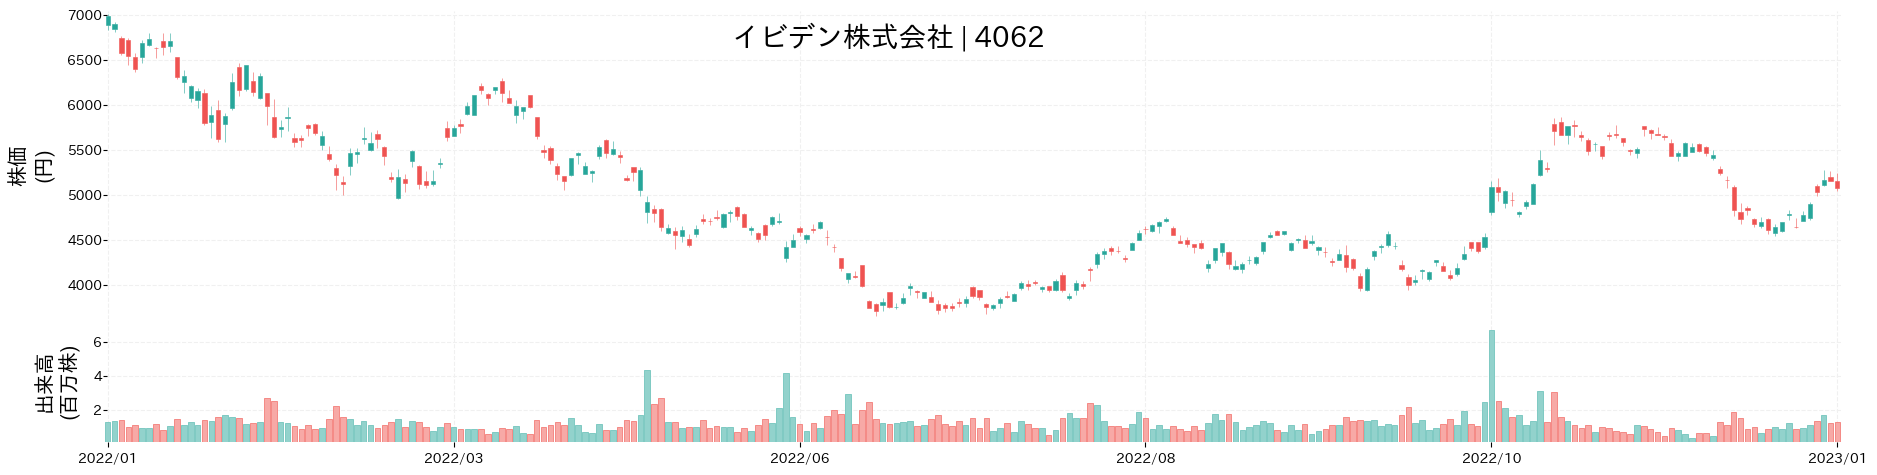 イビデンの株価推移(2022)